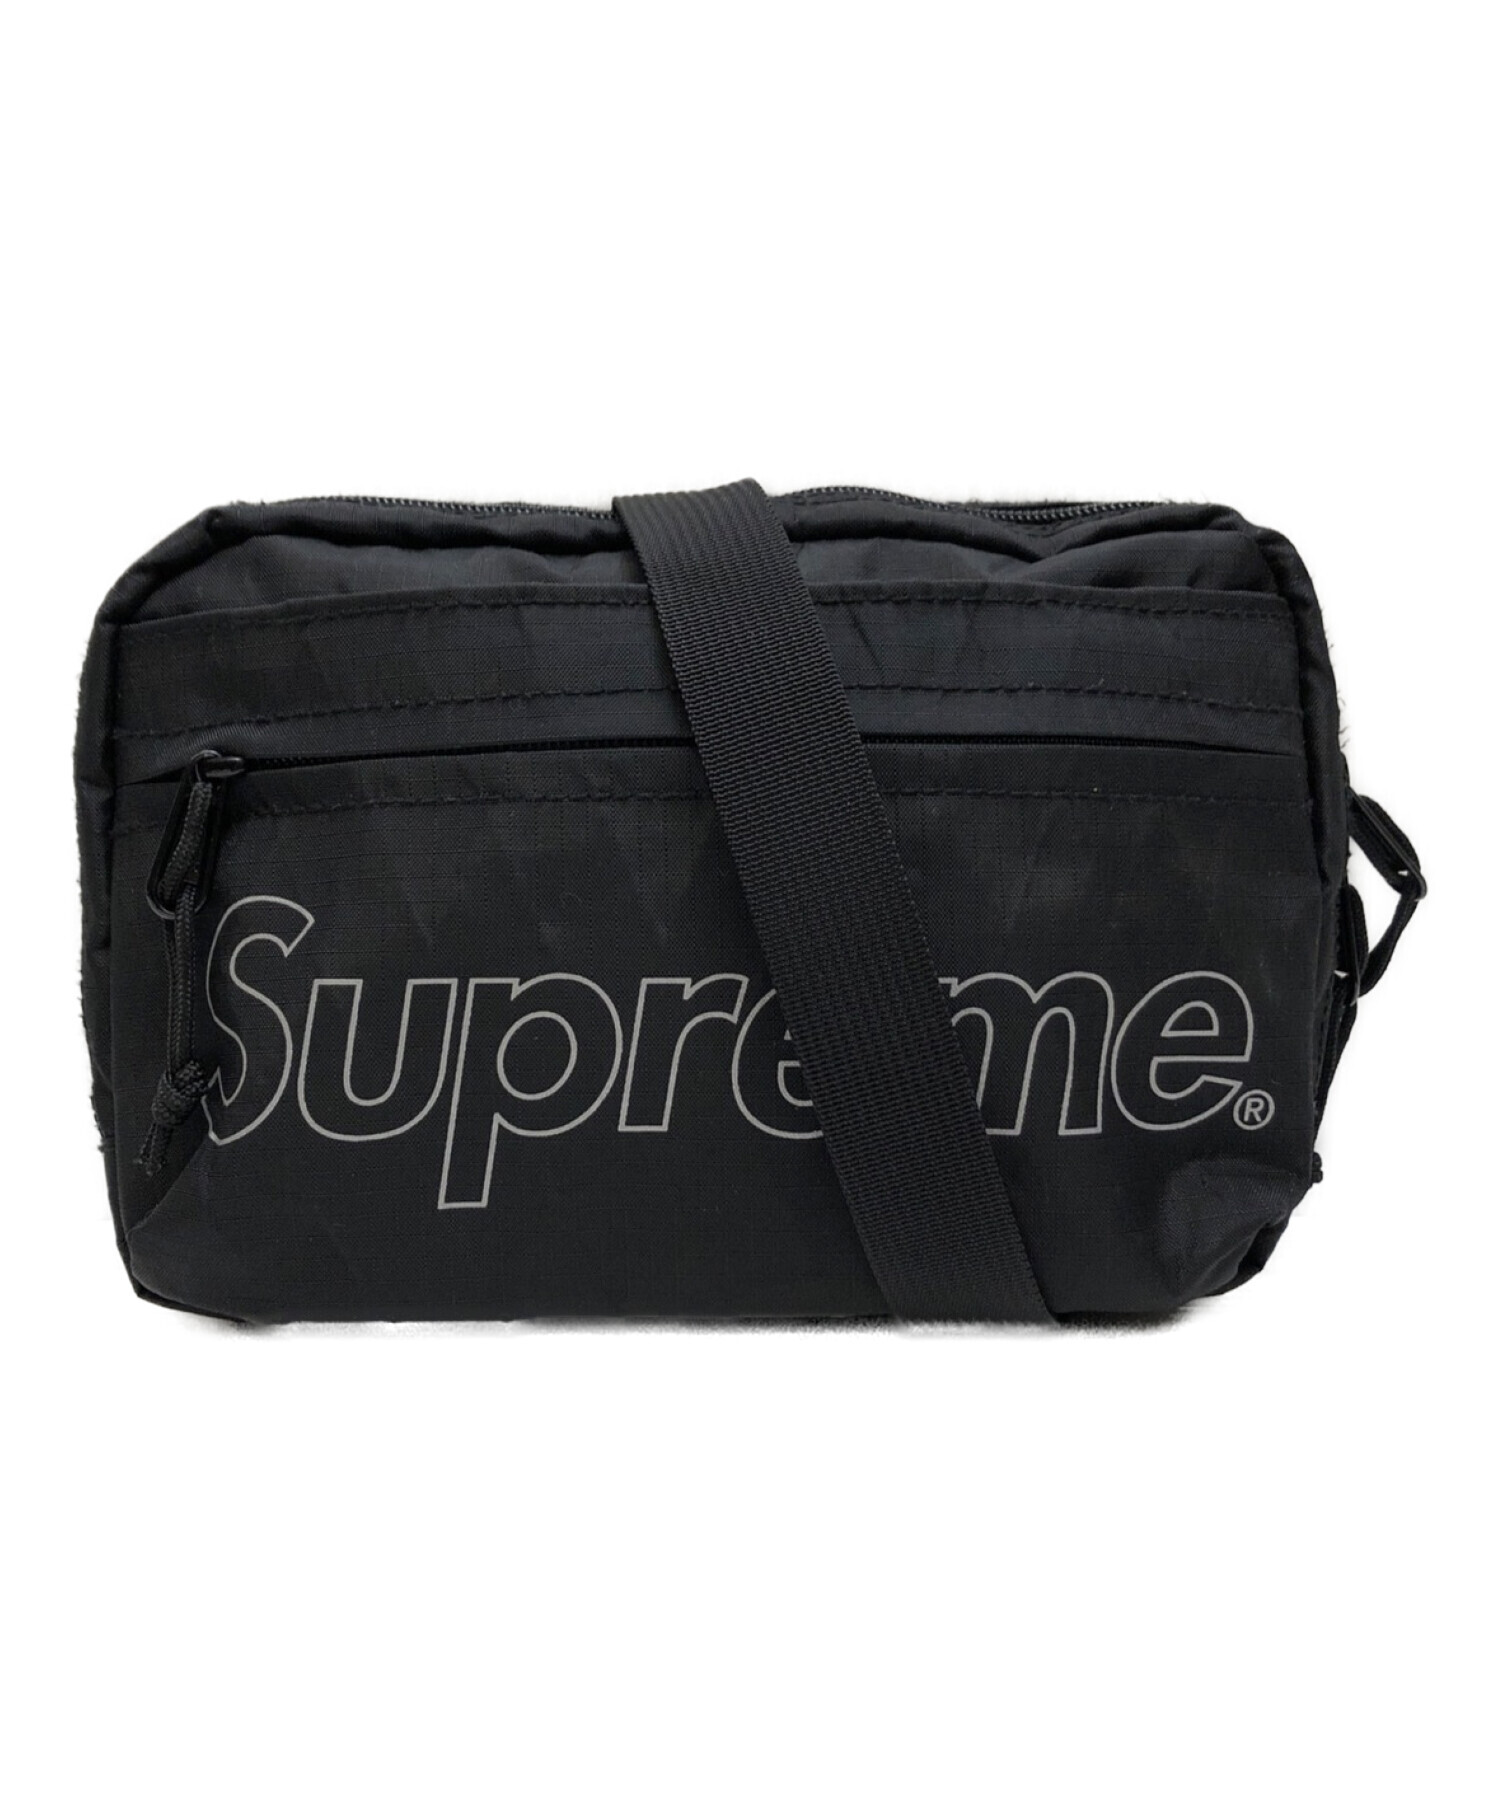 中古・古着通販】Supreme (シュプリーム) 18AW Shoulder Bag ...